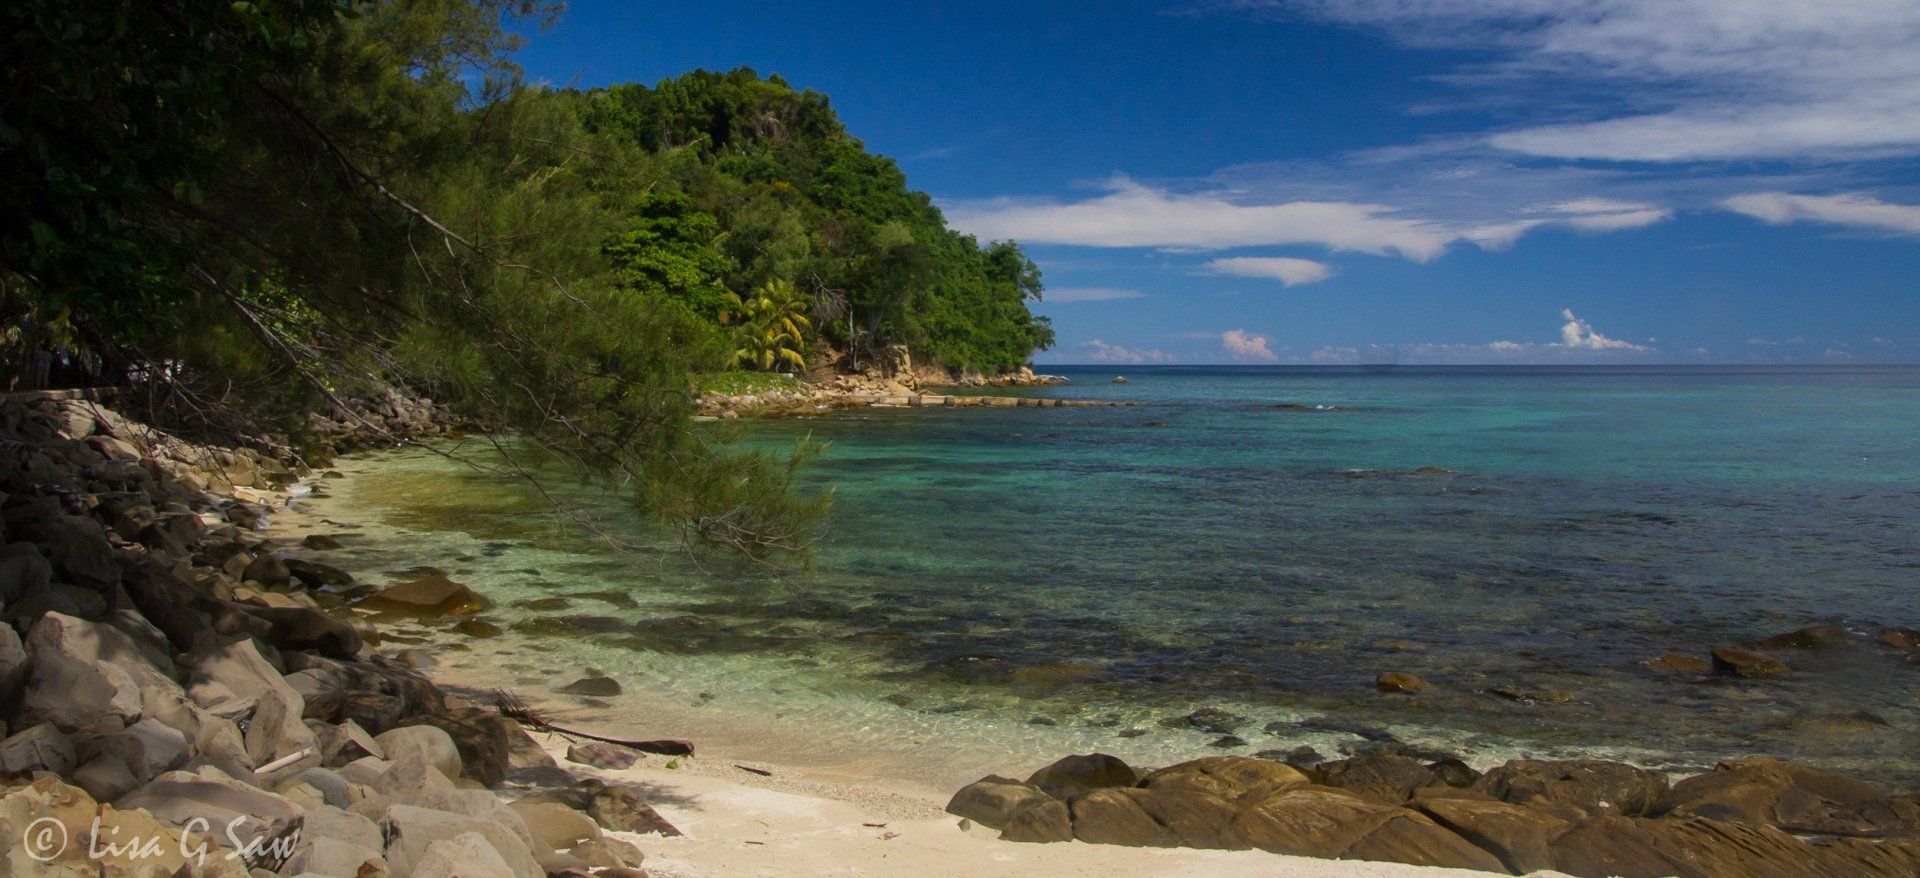 Picturesque cove on Pulau Sapi